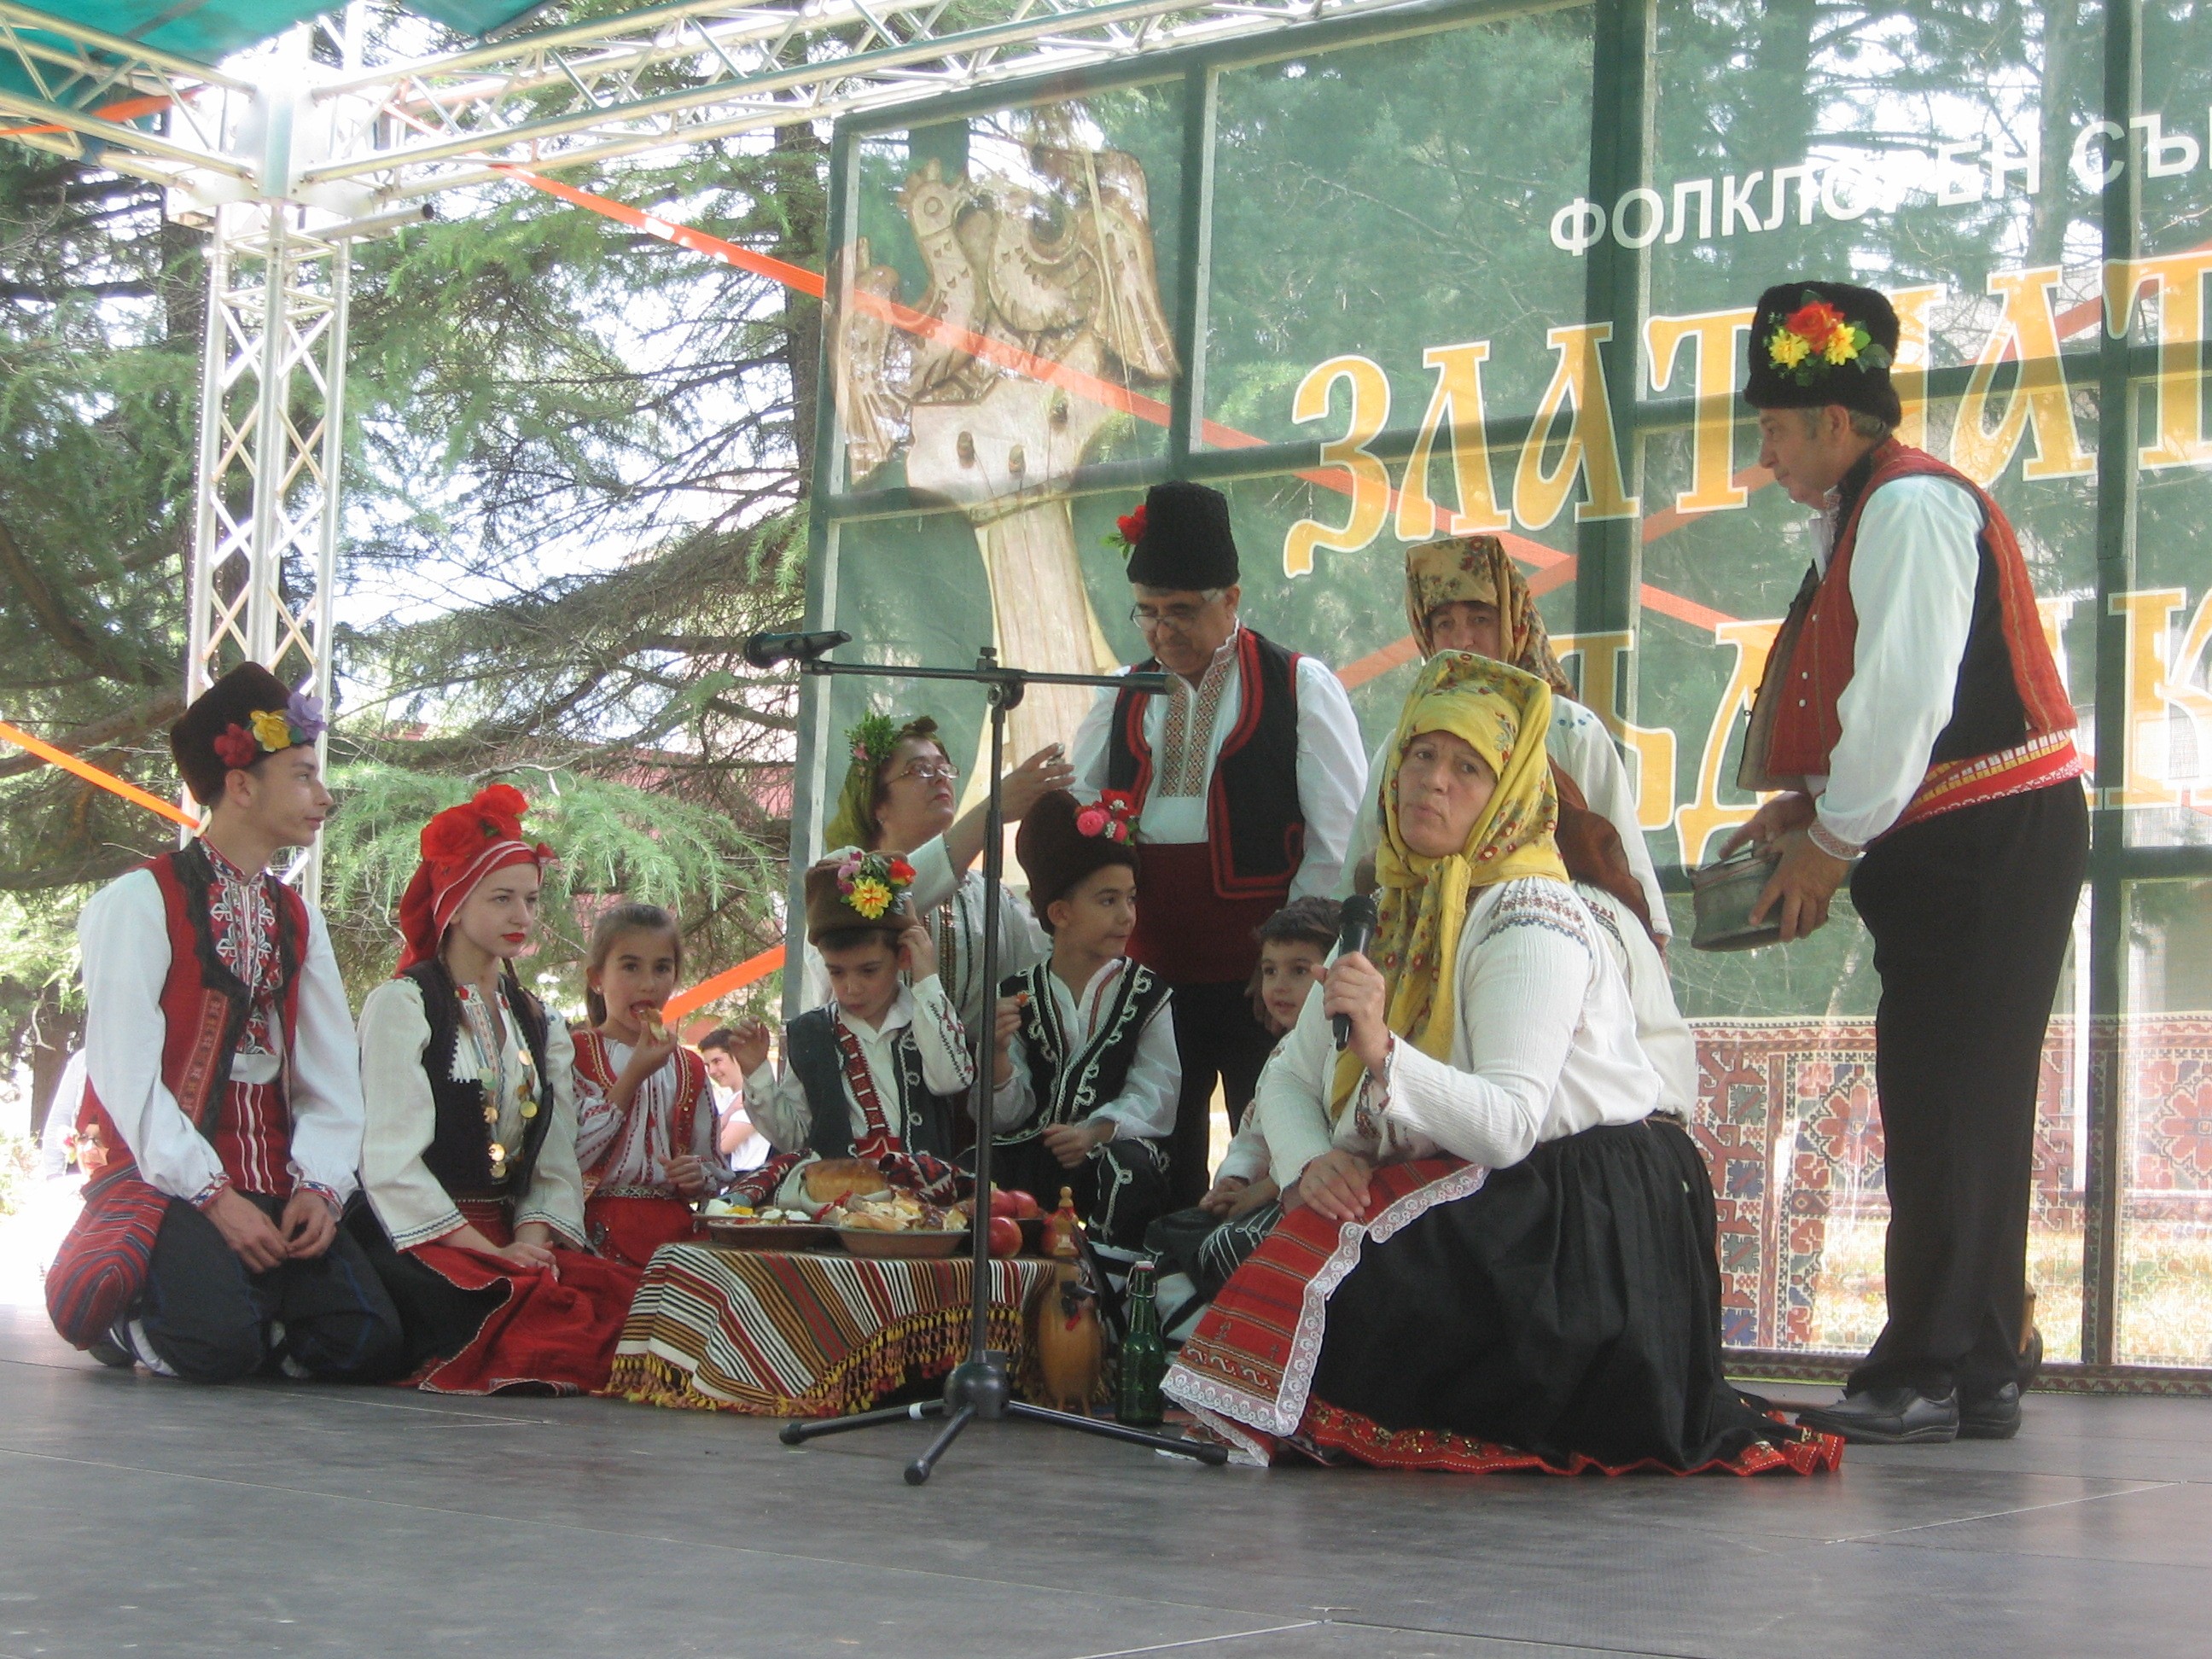 51-вото издание на ,Златната гъдулка, събира любителите на традиционния български фолклор в Русе